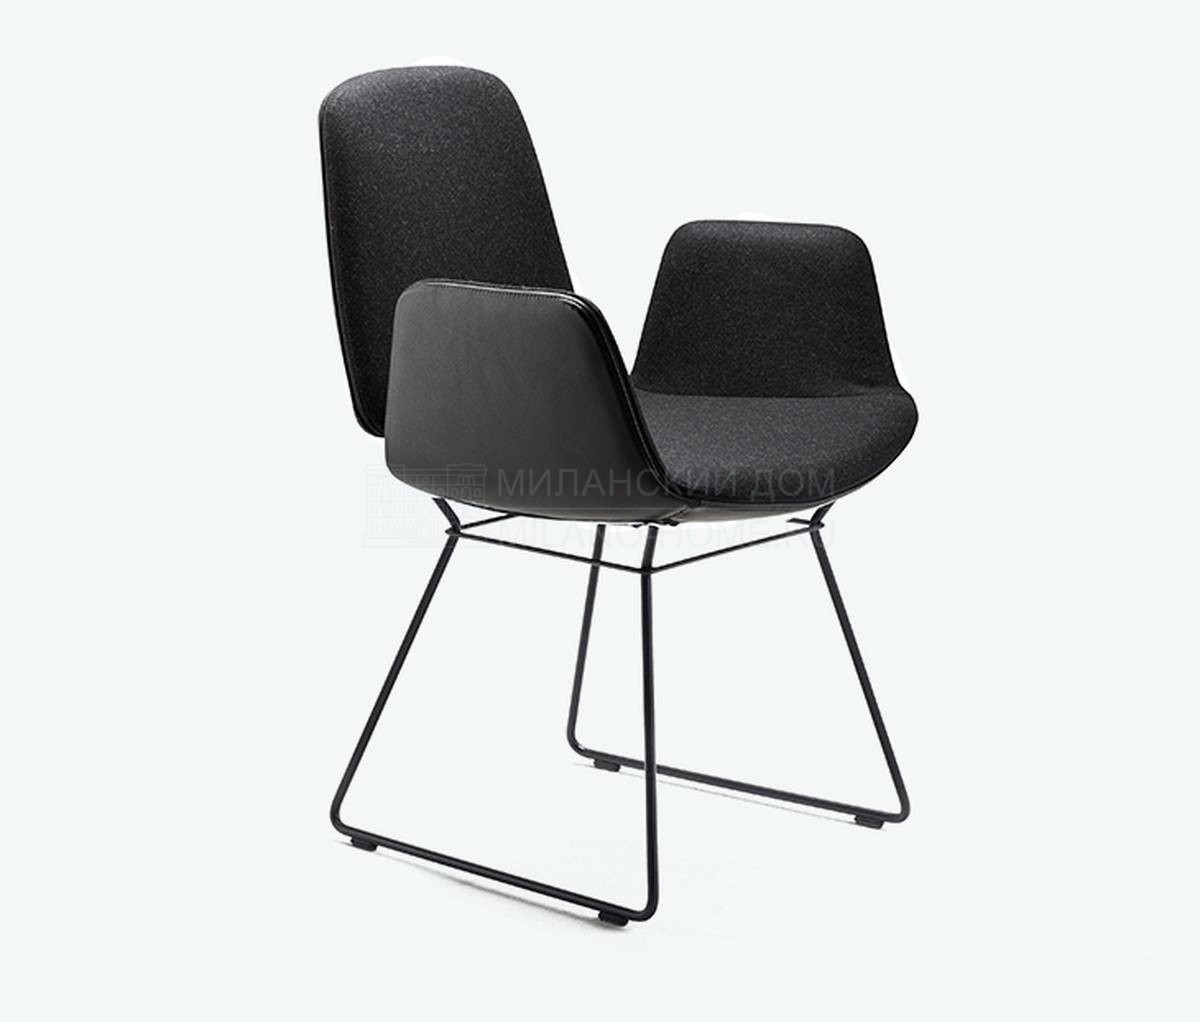 Полукресло Tilda chair black из Германии фабрики FREIFRAU